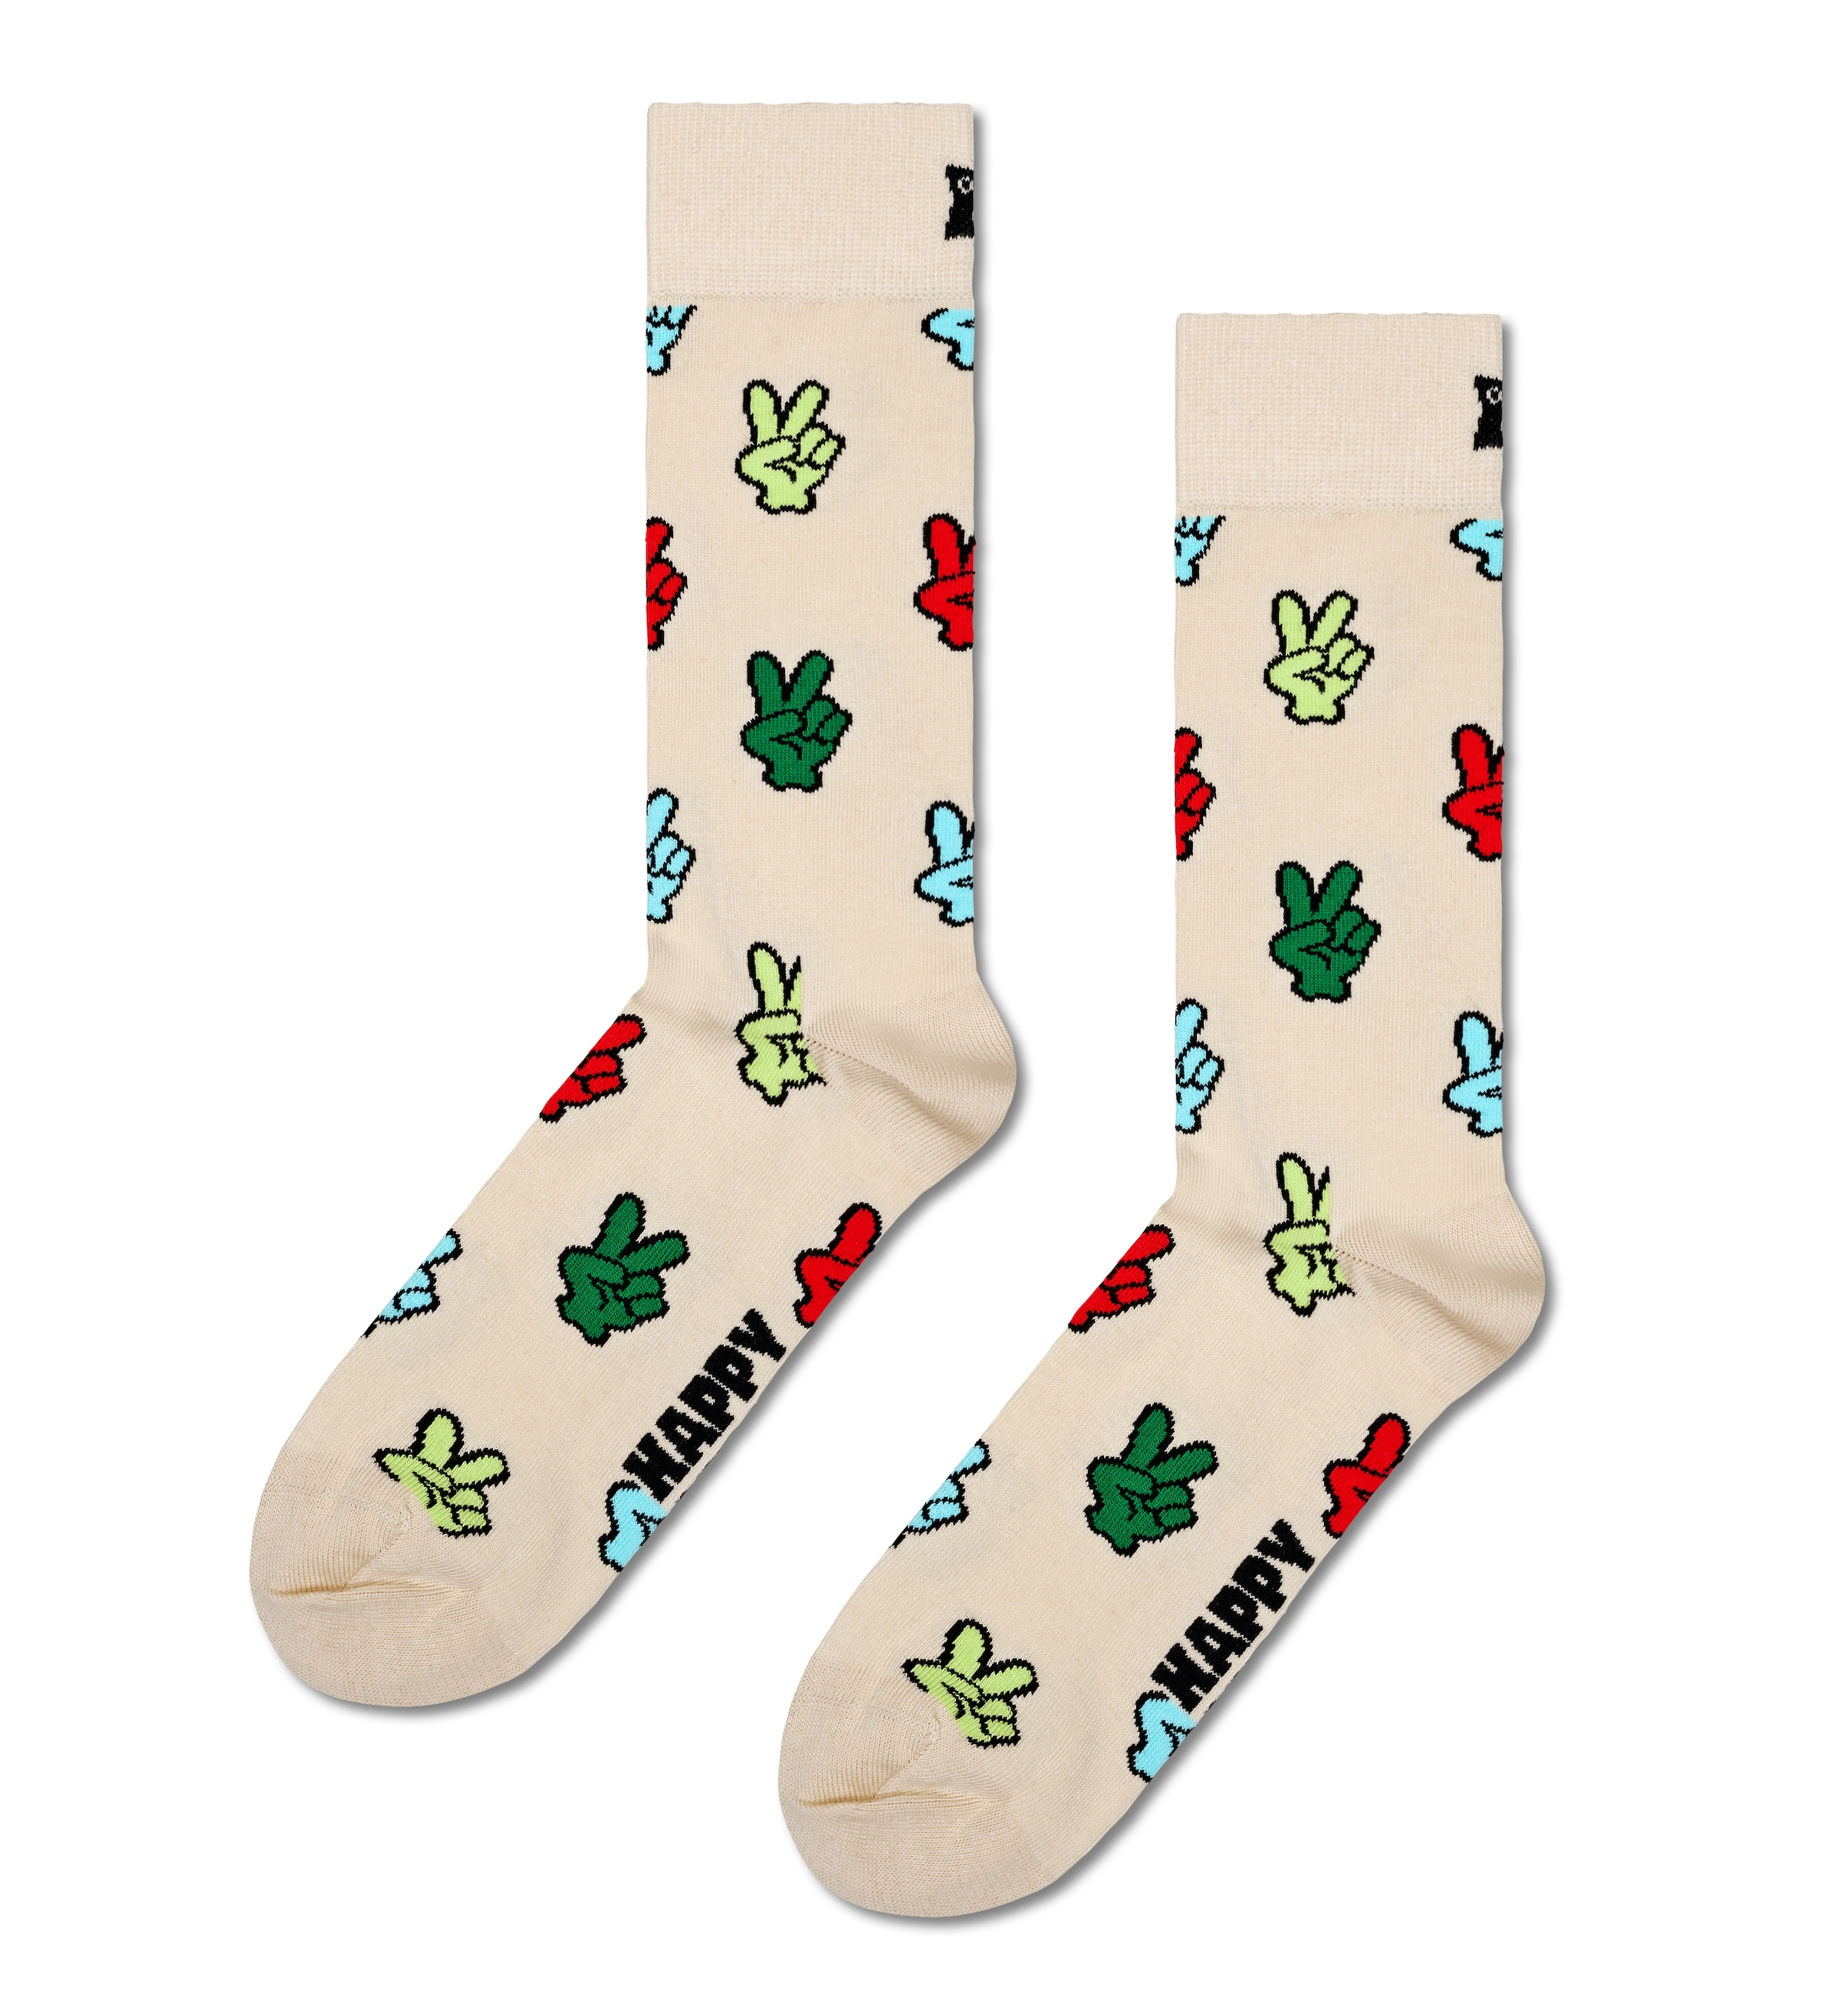 Happy Socks Socken, Peace Gift Set